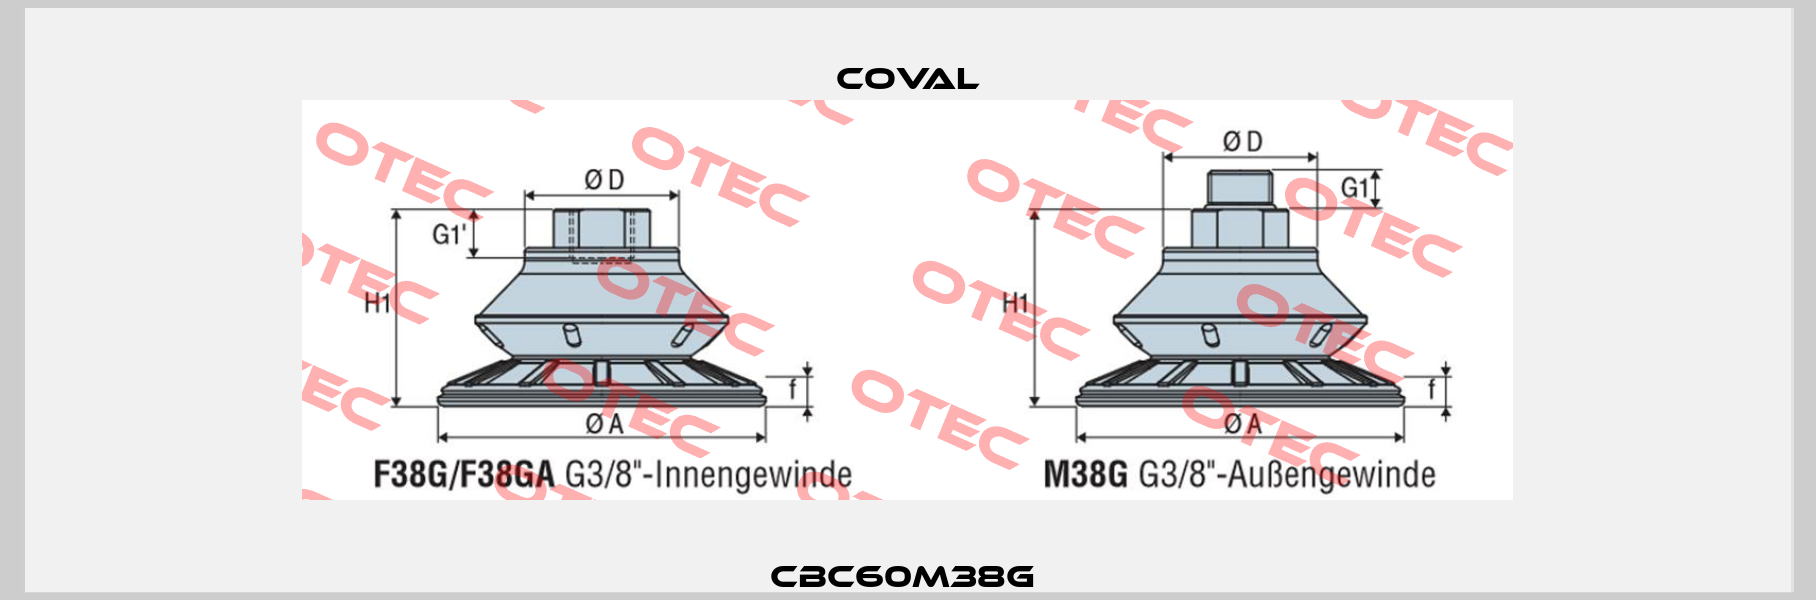 CBC60M38G  Coval